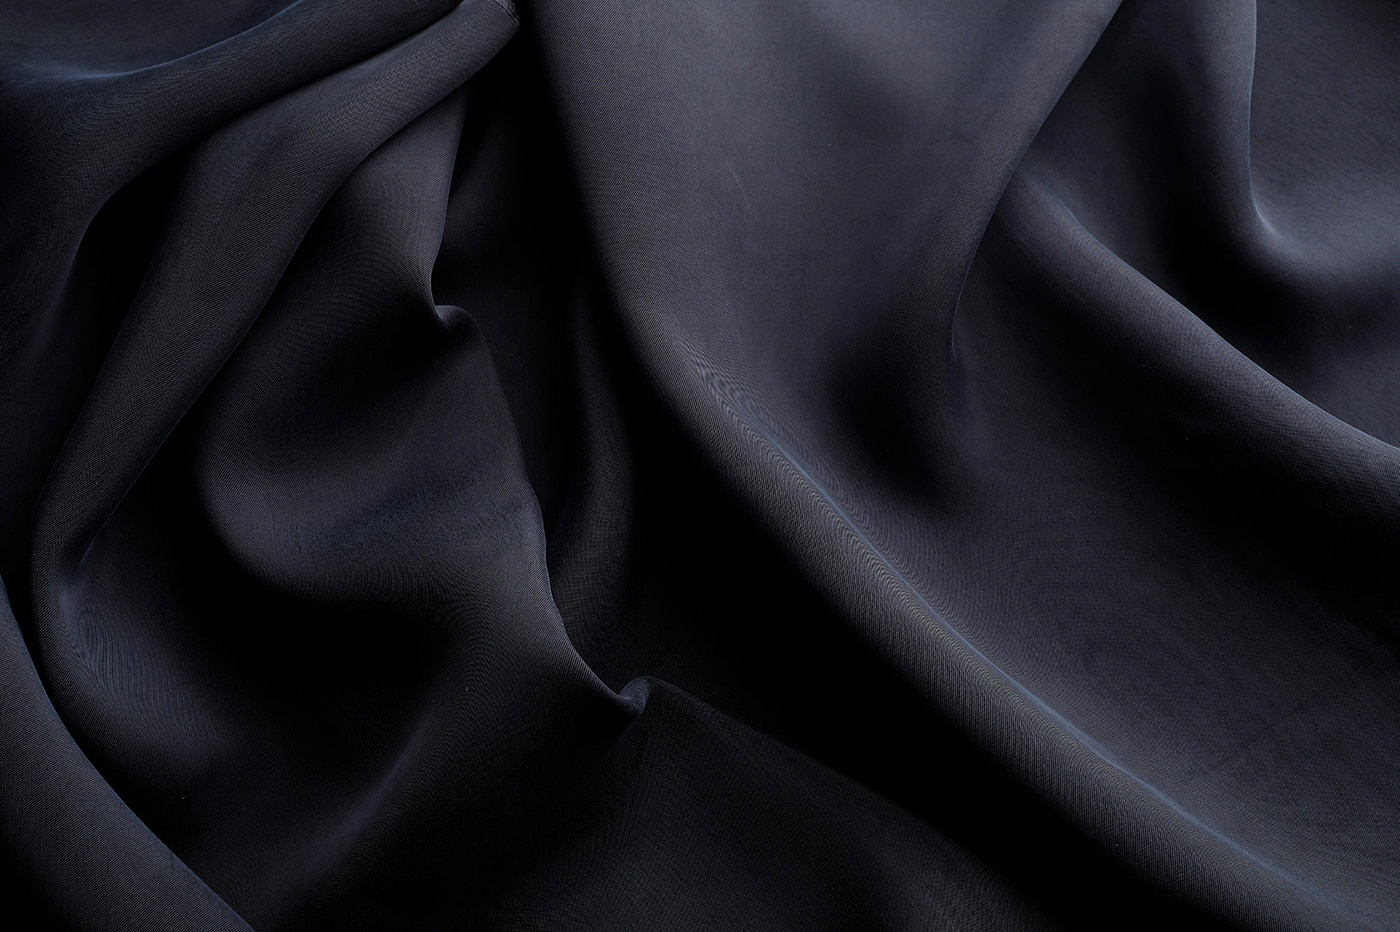 bemberg suit jacket lining fabric